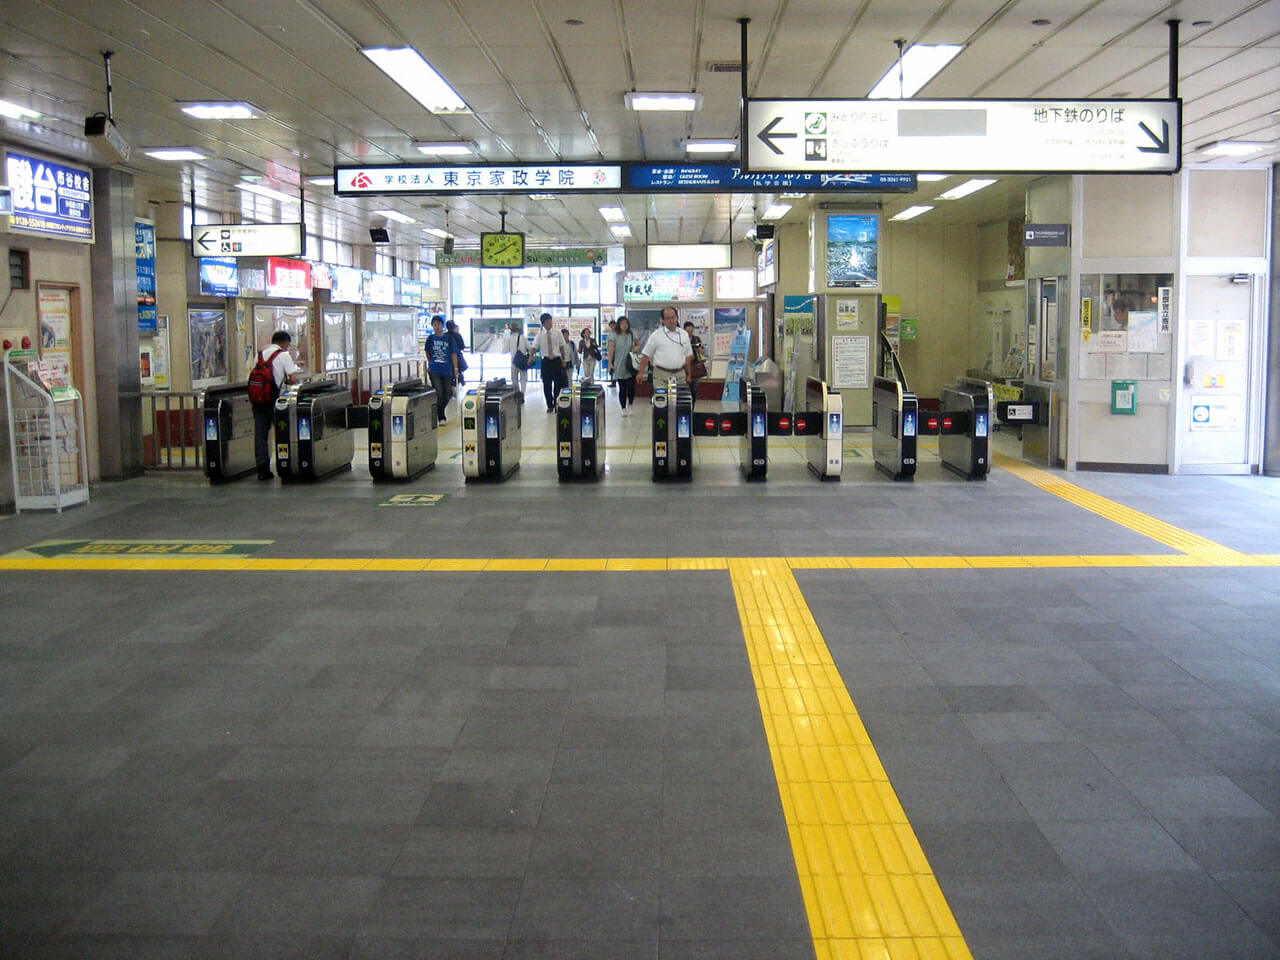 JR東日本市ヶ谷駅の改札口付近の床に使用されているハイブリッドストーン アベイラス アンプロップを改札正面から見た様子